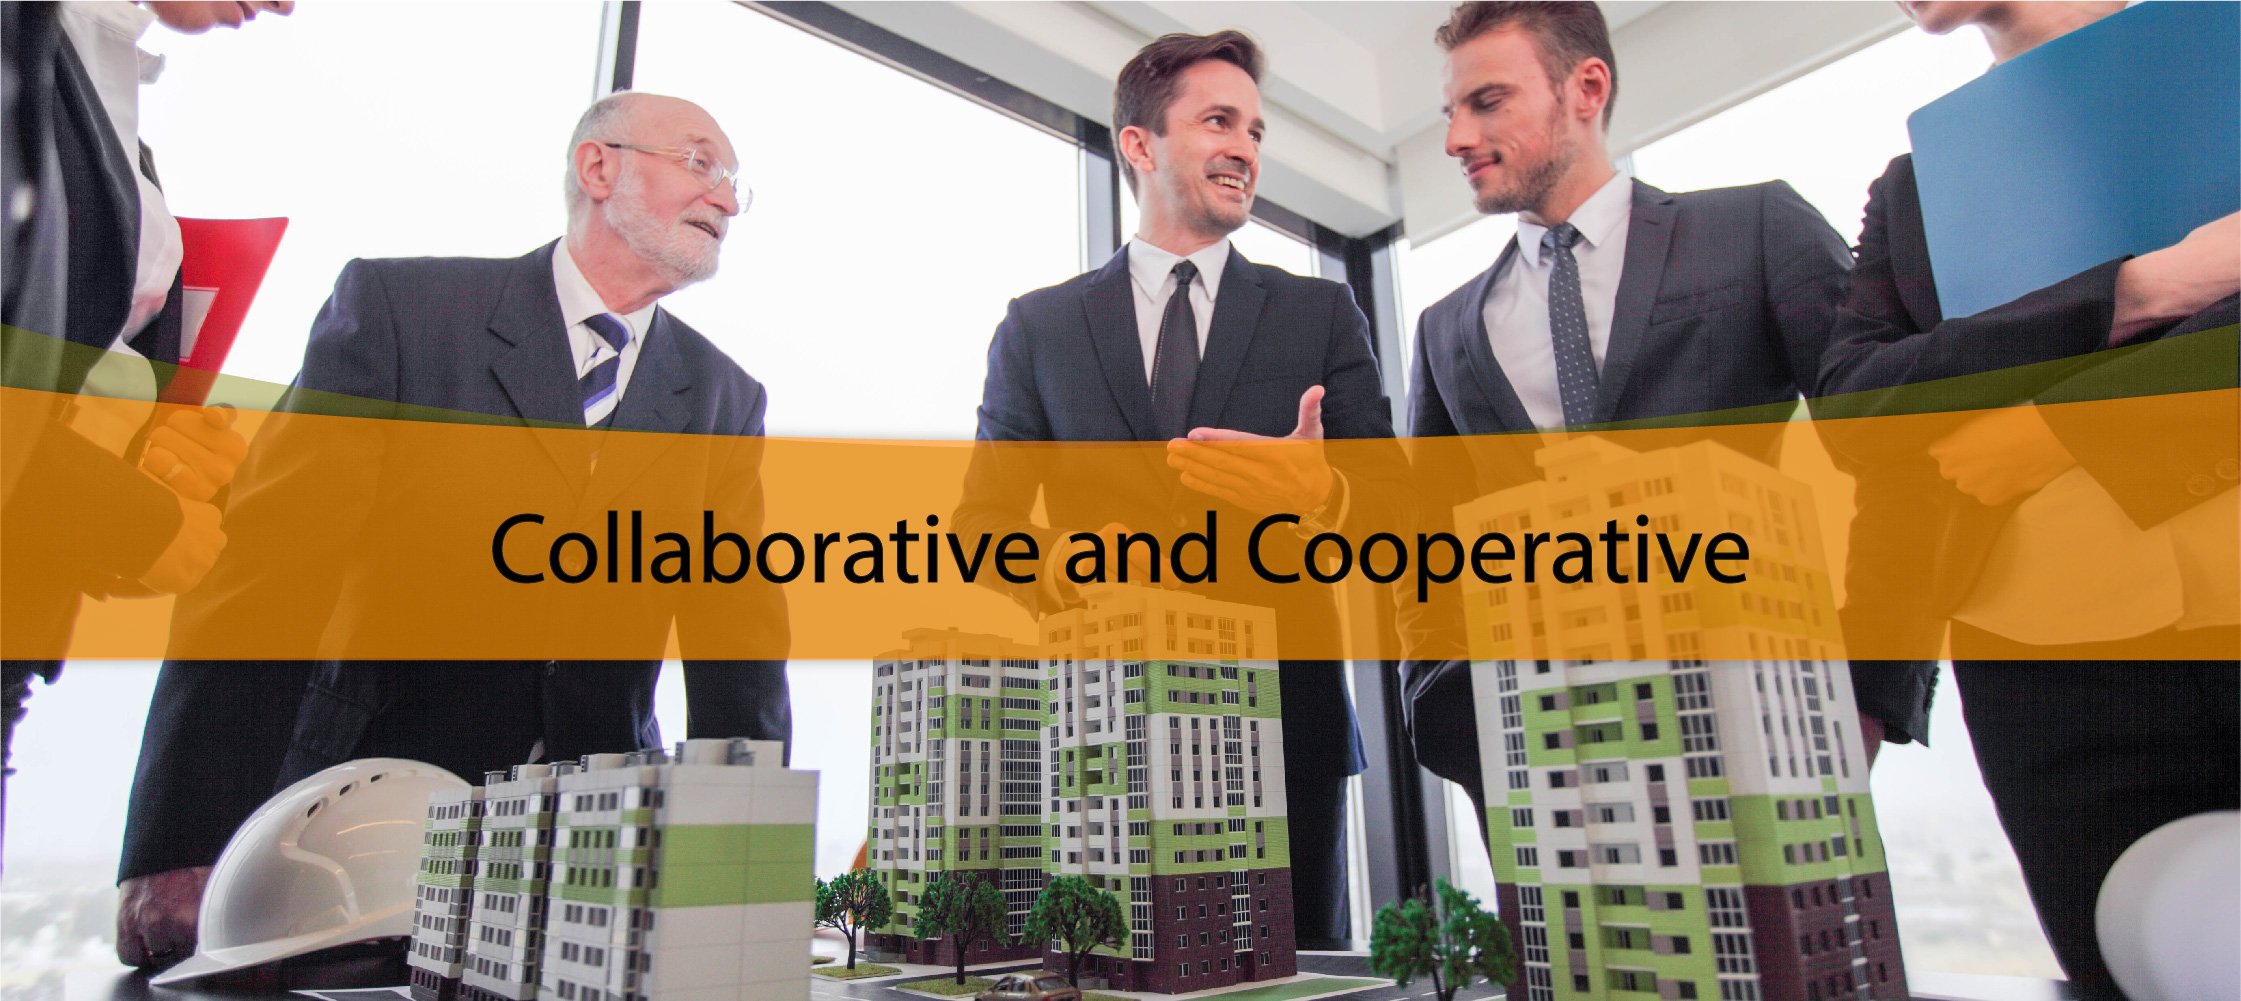 Collaborative and Cooperative